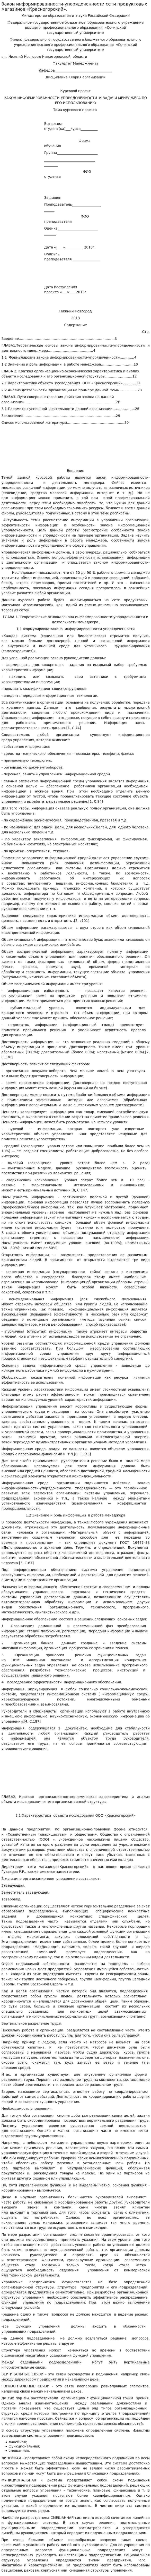 Закон информированности-упорядоченности сети продуктовых магазинов «Красногорский»,